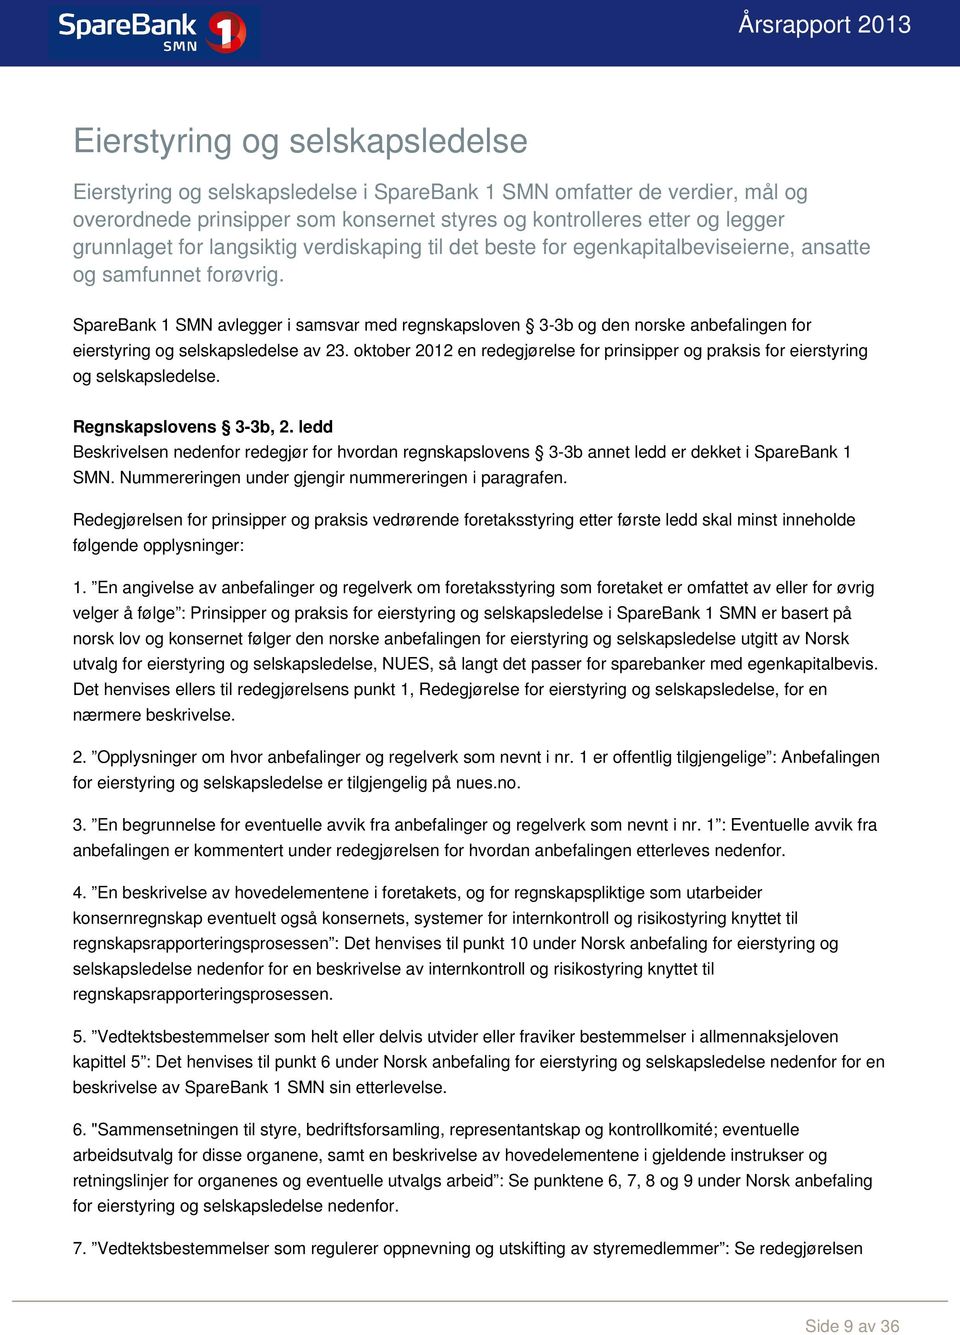 SpareBank 1 SMN avlegger i samsvar med regnskapsloven 3-3b og den norske anbefalingen for eierstyring og selskapsledelse av 23.